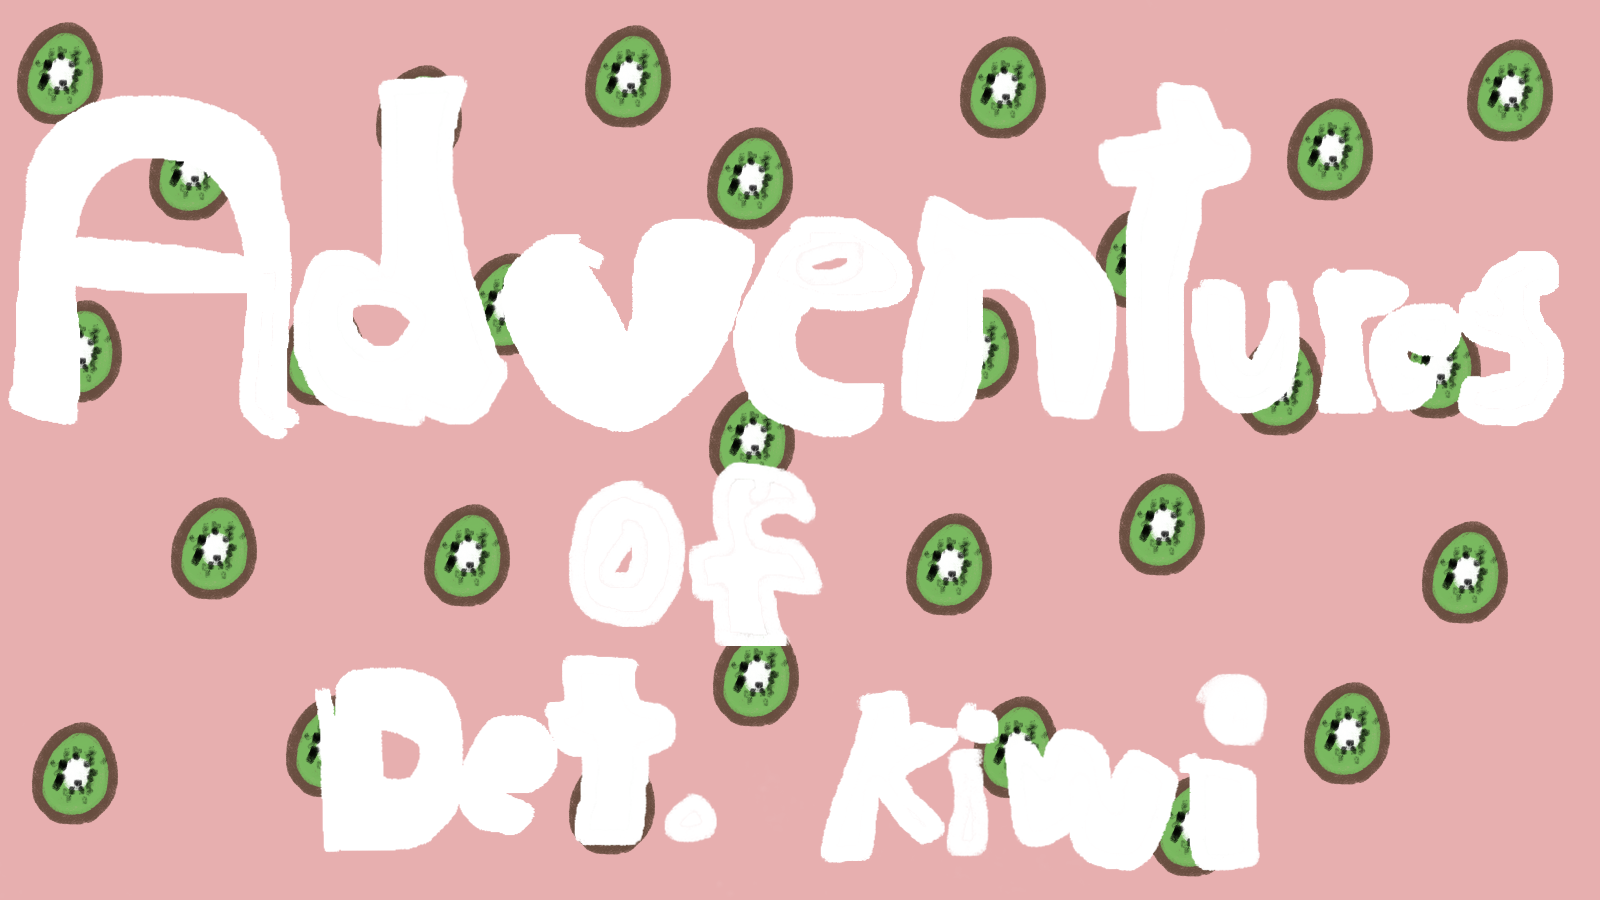 Adventures of Detective Kiwi